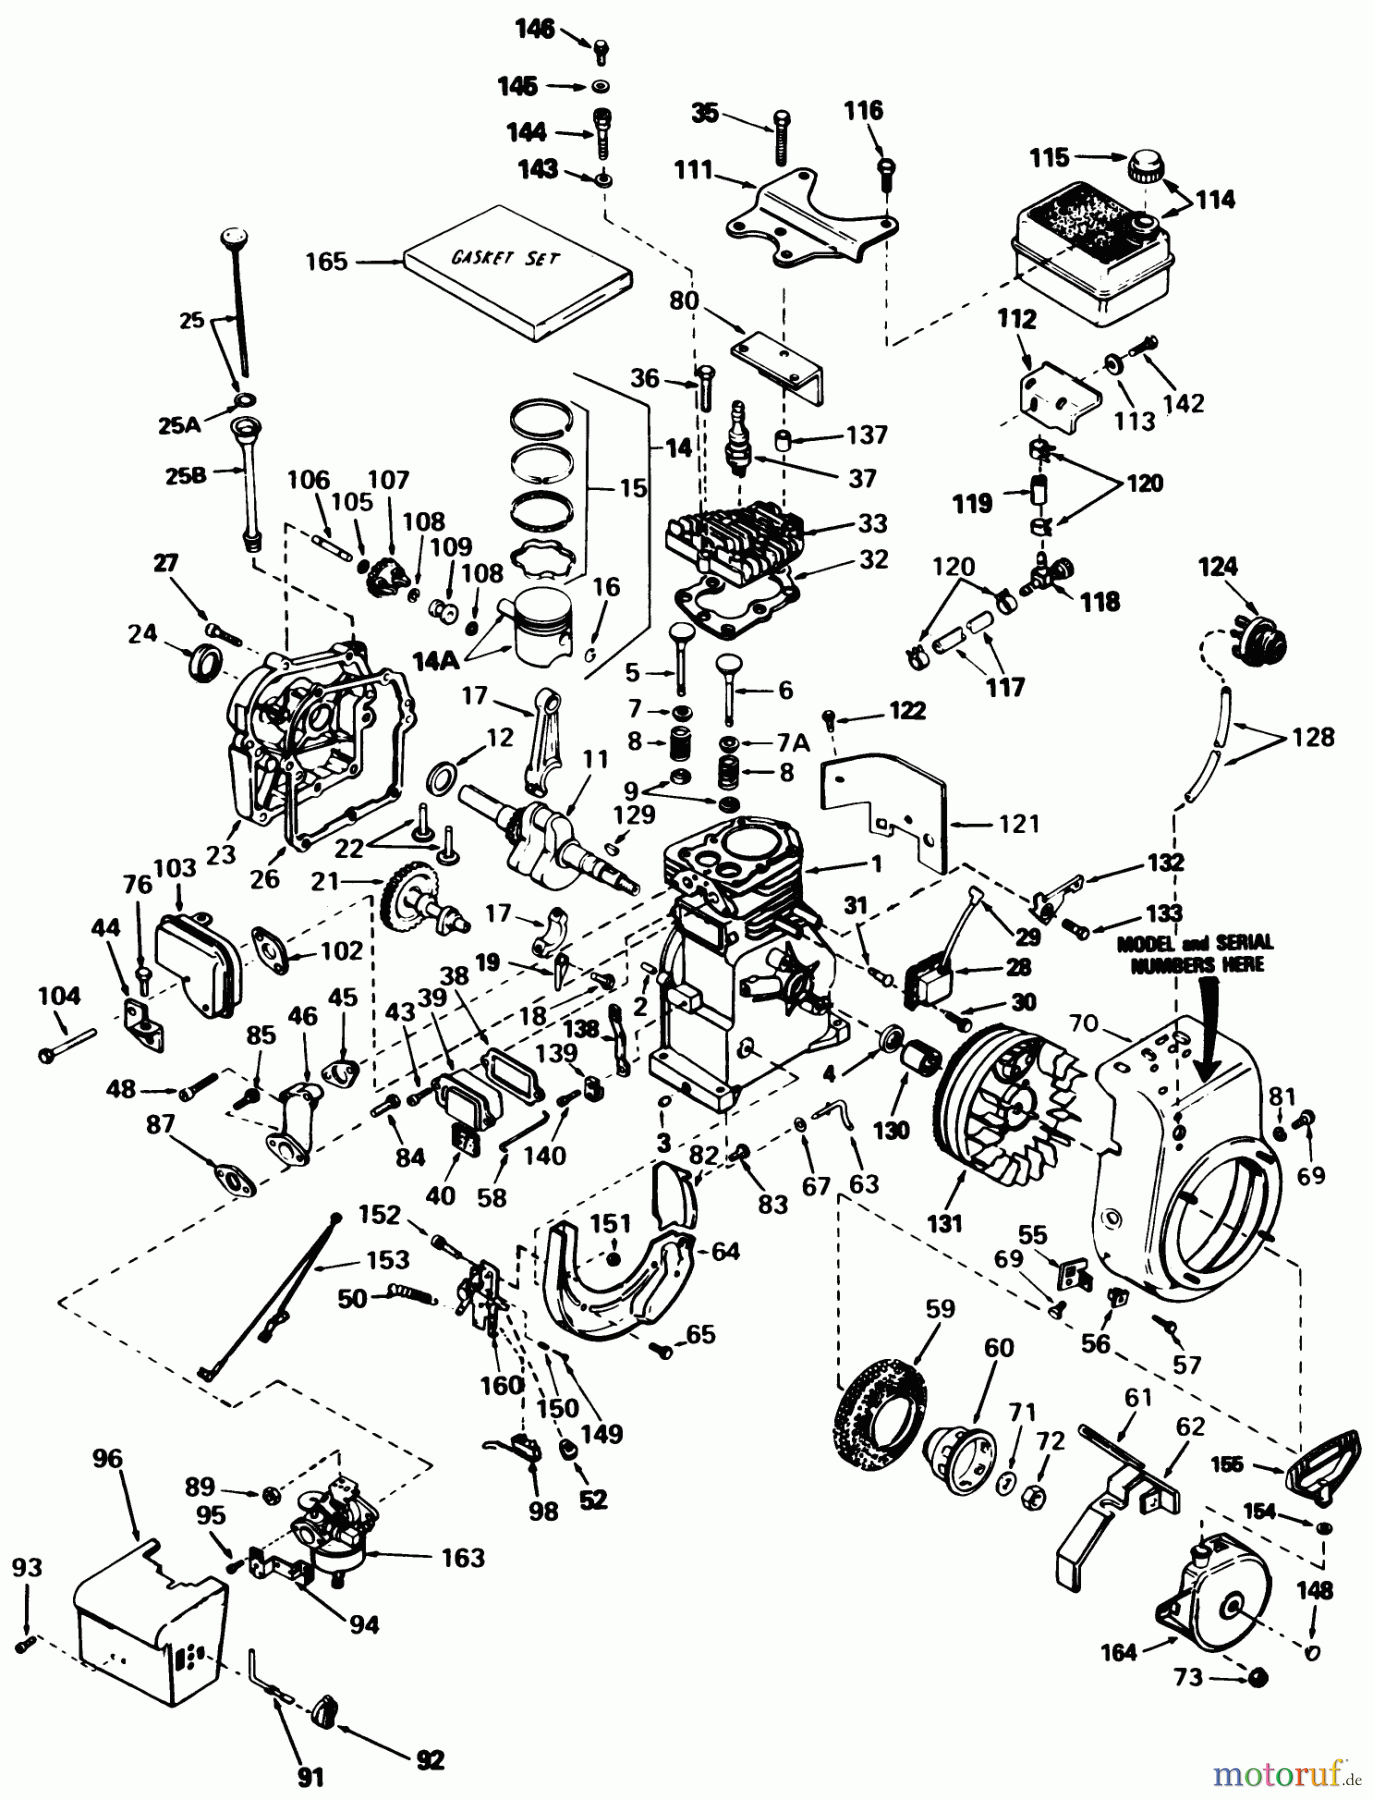  Toro Neu Snow Blowers/Snow Throwers Seite 1 38056 (521) - Toro 521 Snowthrower, 1985 (5000001-5999999) ENGINE TECUMSEH MODEL HS50-67259F